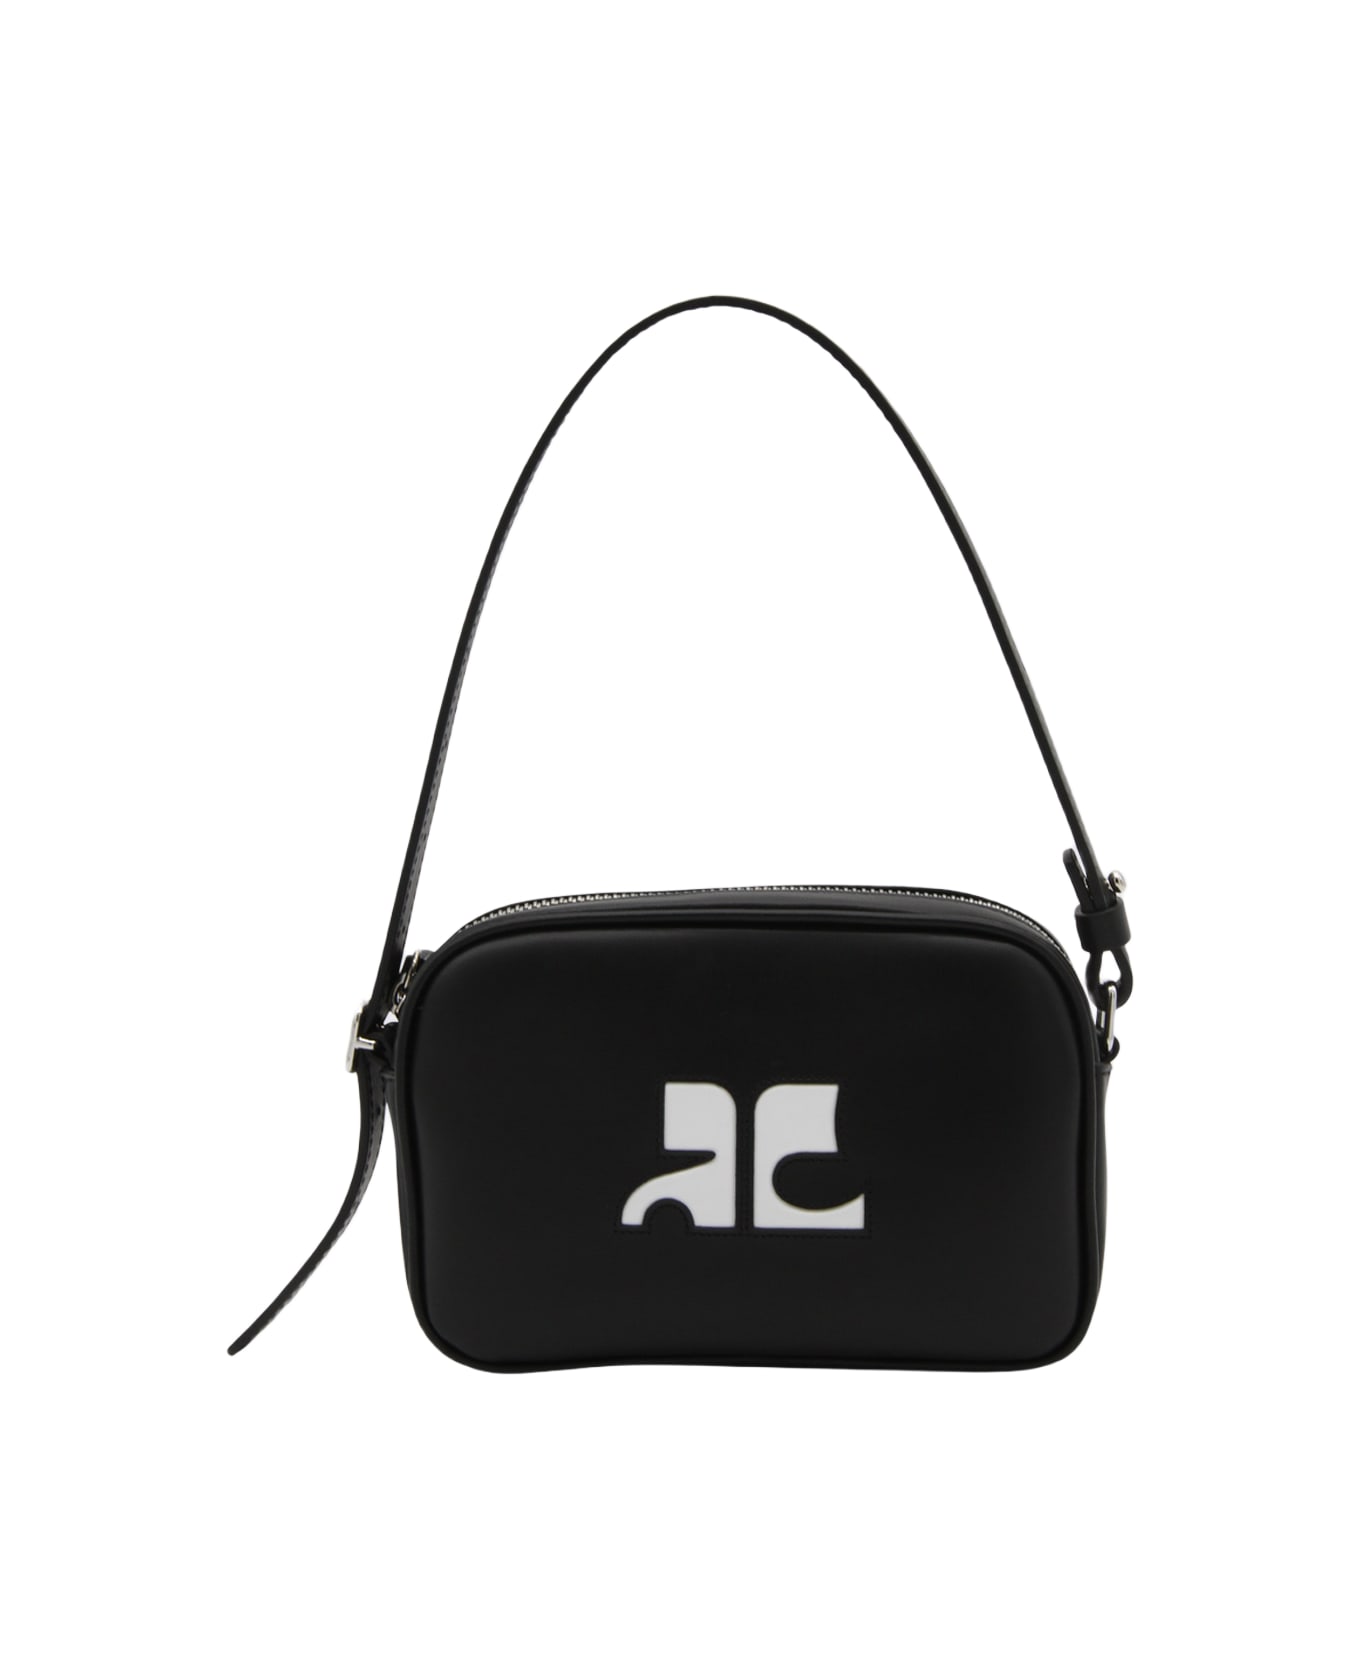 Courrèges Black Calfskin Shoulder Bag - Black